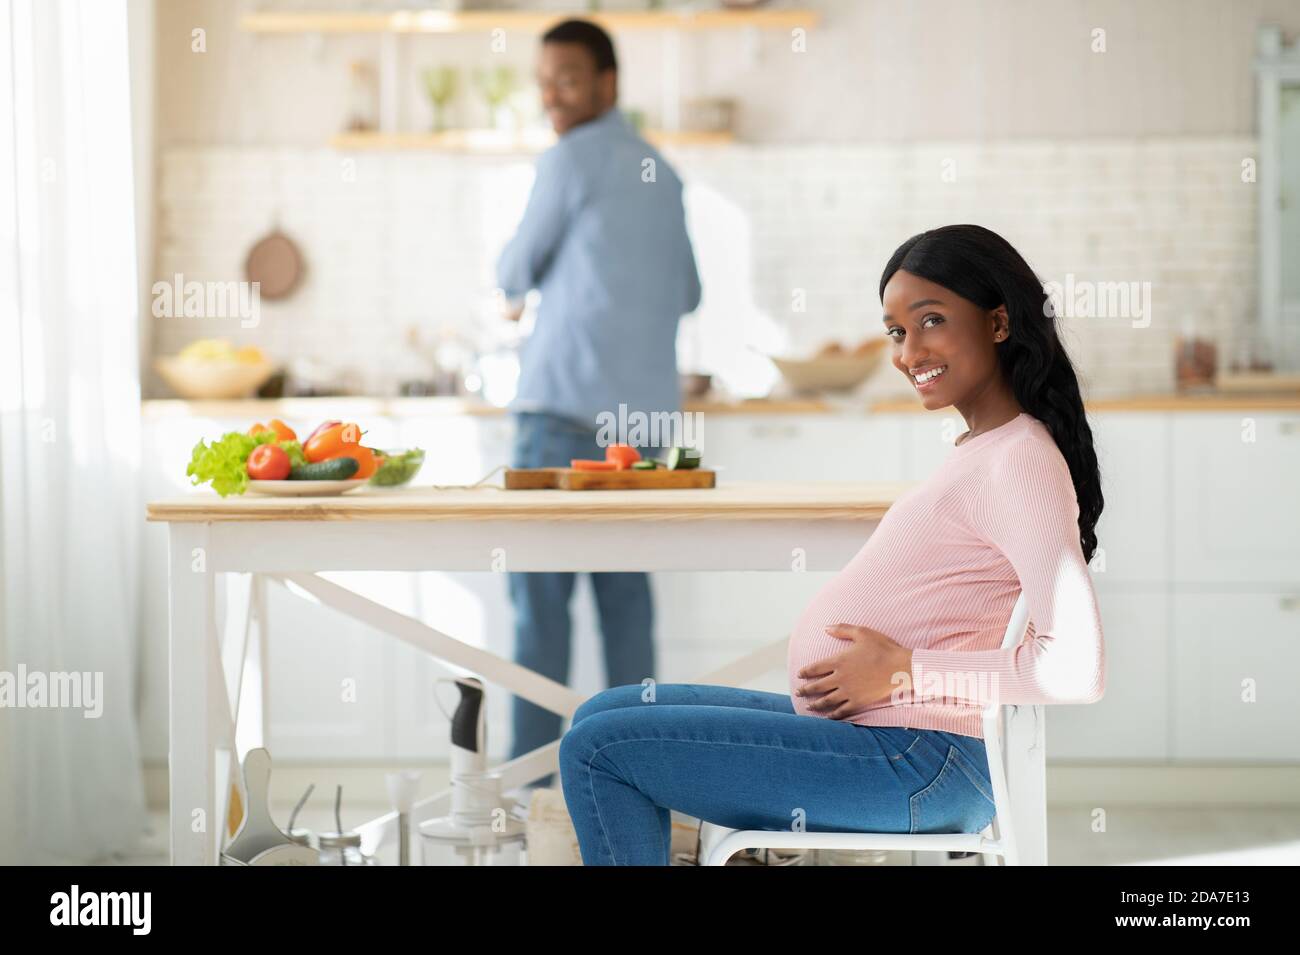 Gesunde Ernährung während der Schwangerschaft. Schöne erwartungsvolle Frau wartet auf ihren Mann gesundes Frühstück in der Küche zu kochen Stockfoto